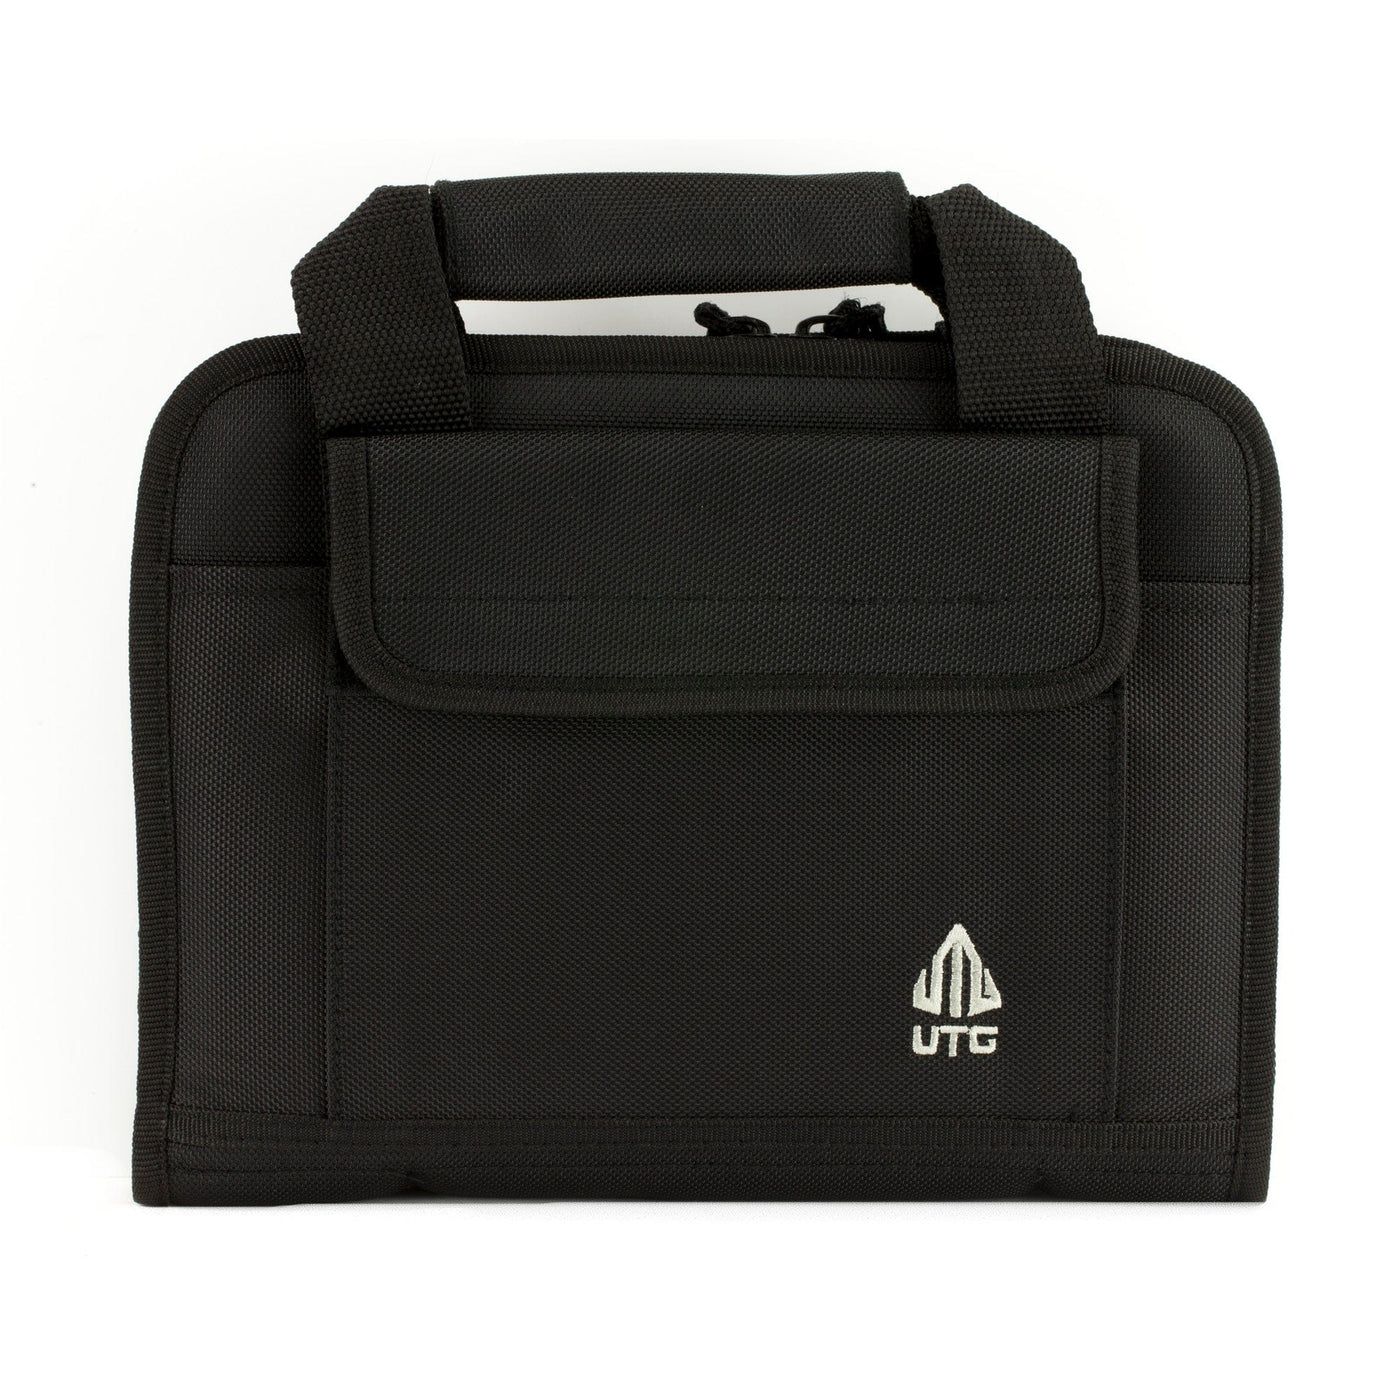 Leapers, Inc. - UTG Utg Deluxe Single Pistol Case Blk Soft Gun Cases